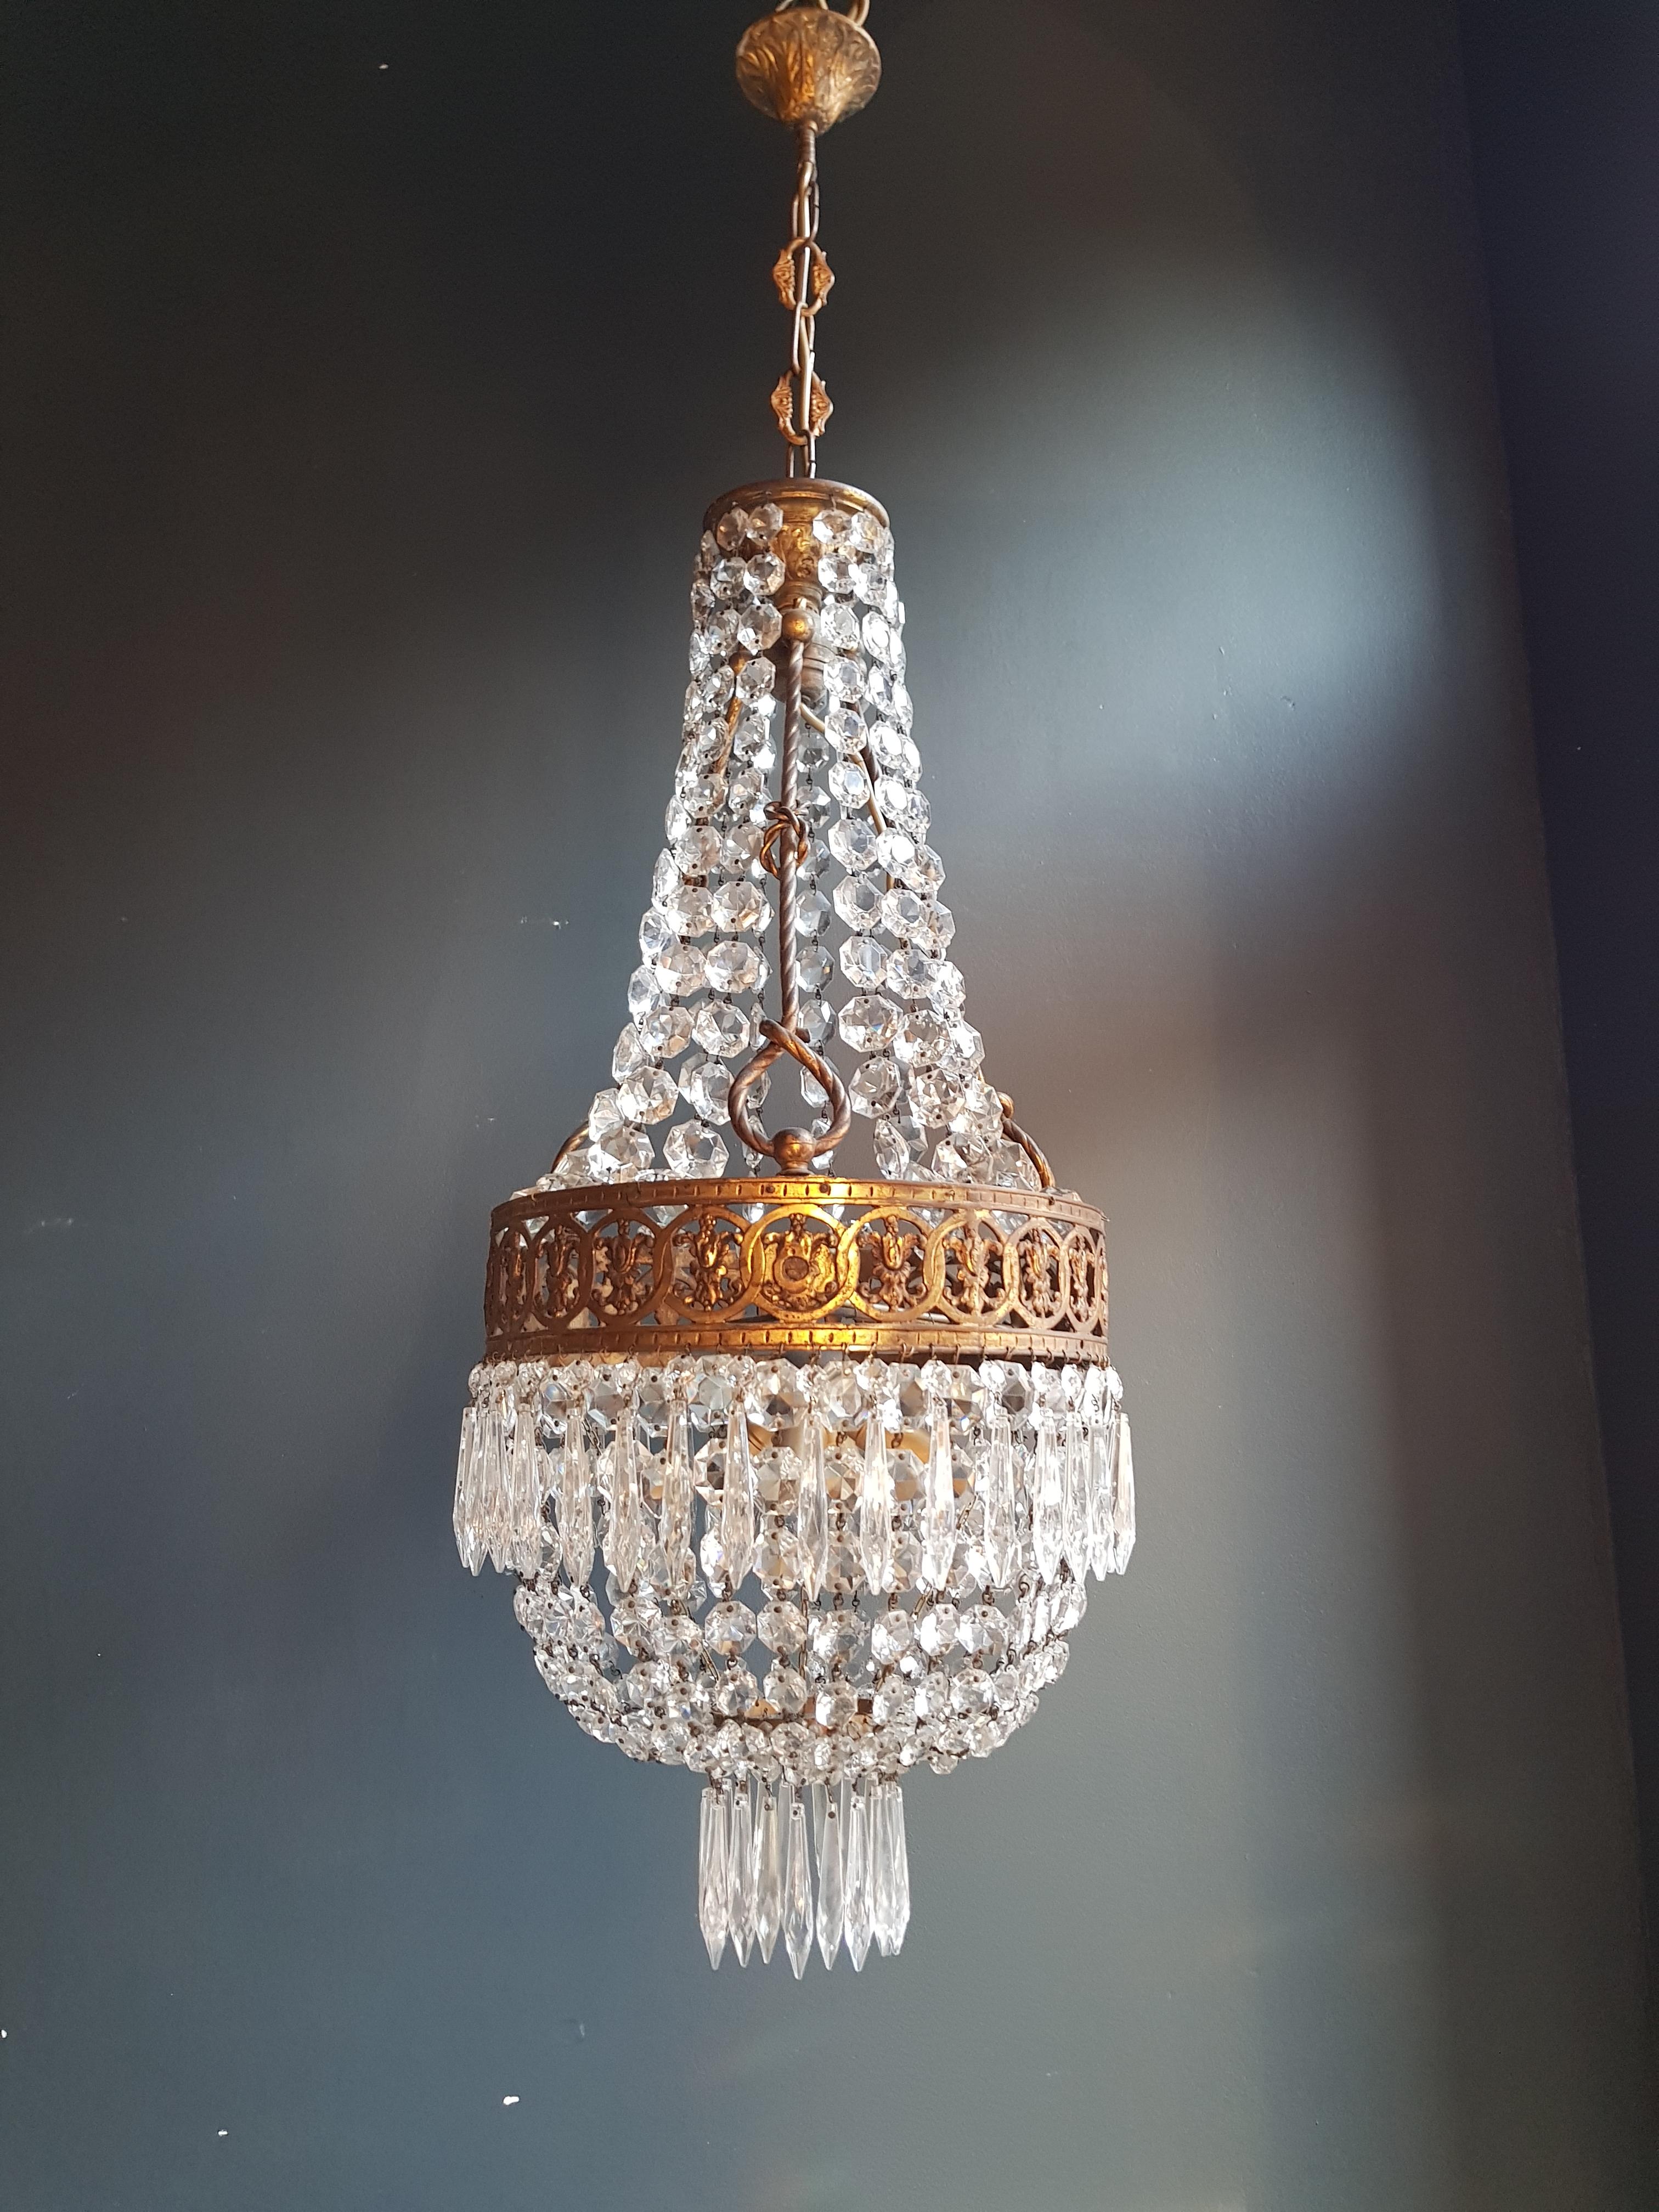 European Basket Chandelier Brass Empire Crystal Lustre Ceiling Antique Art Nouveau For Sale